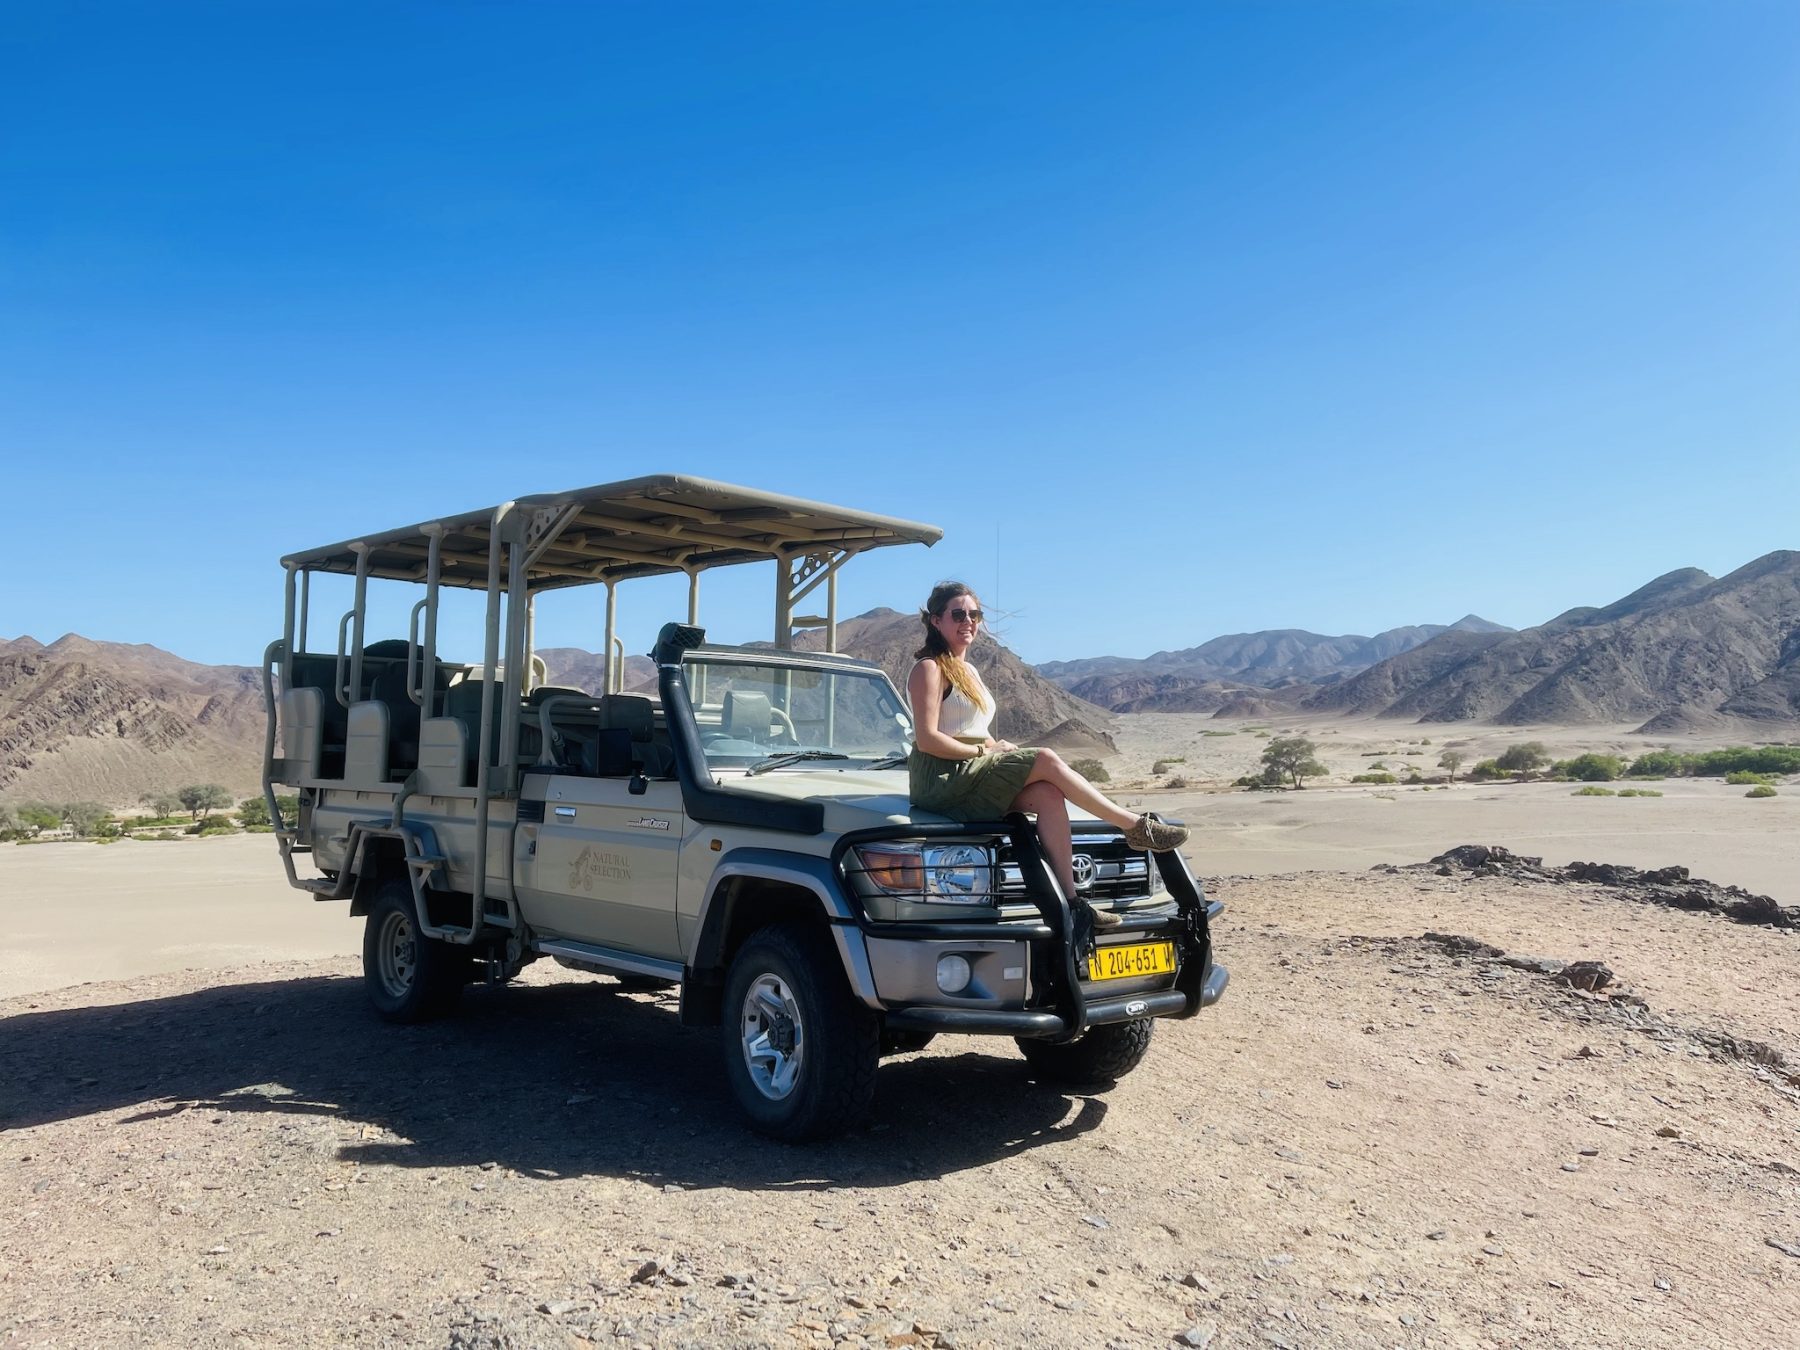 Lisa Repkes op selfdrive in Namibie - Een selfdrive reis naar Afrika met Safari Atelier